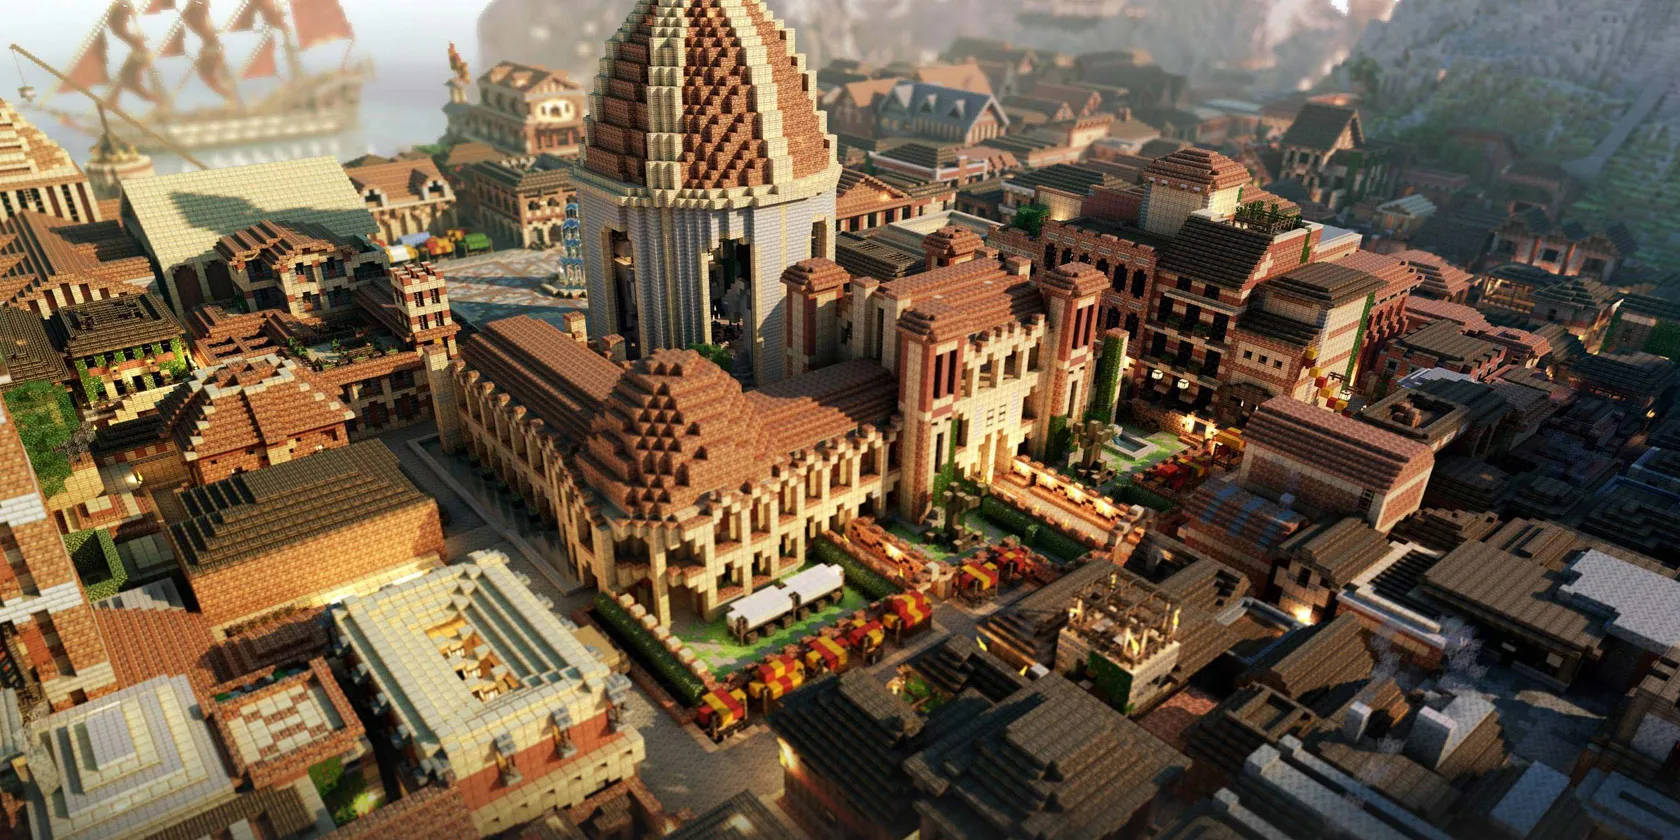 Beautiful Minecraft Old European Town